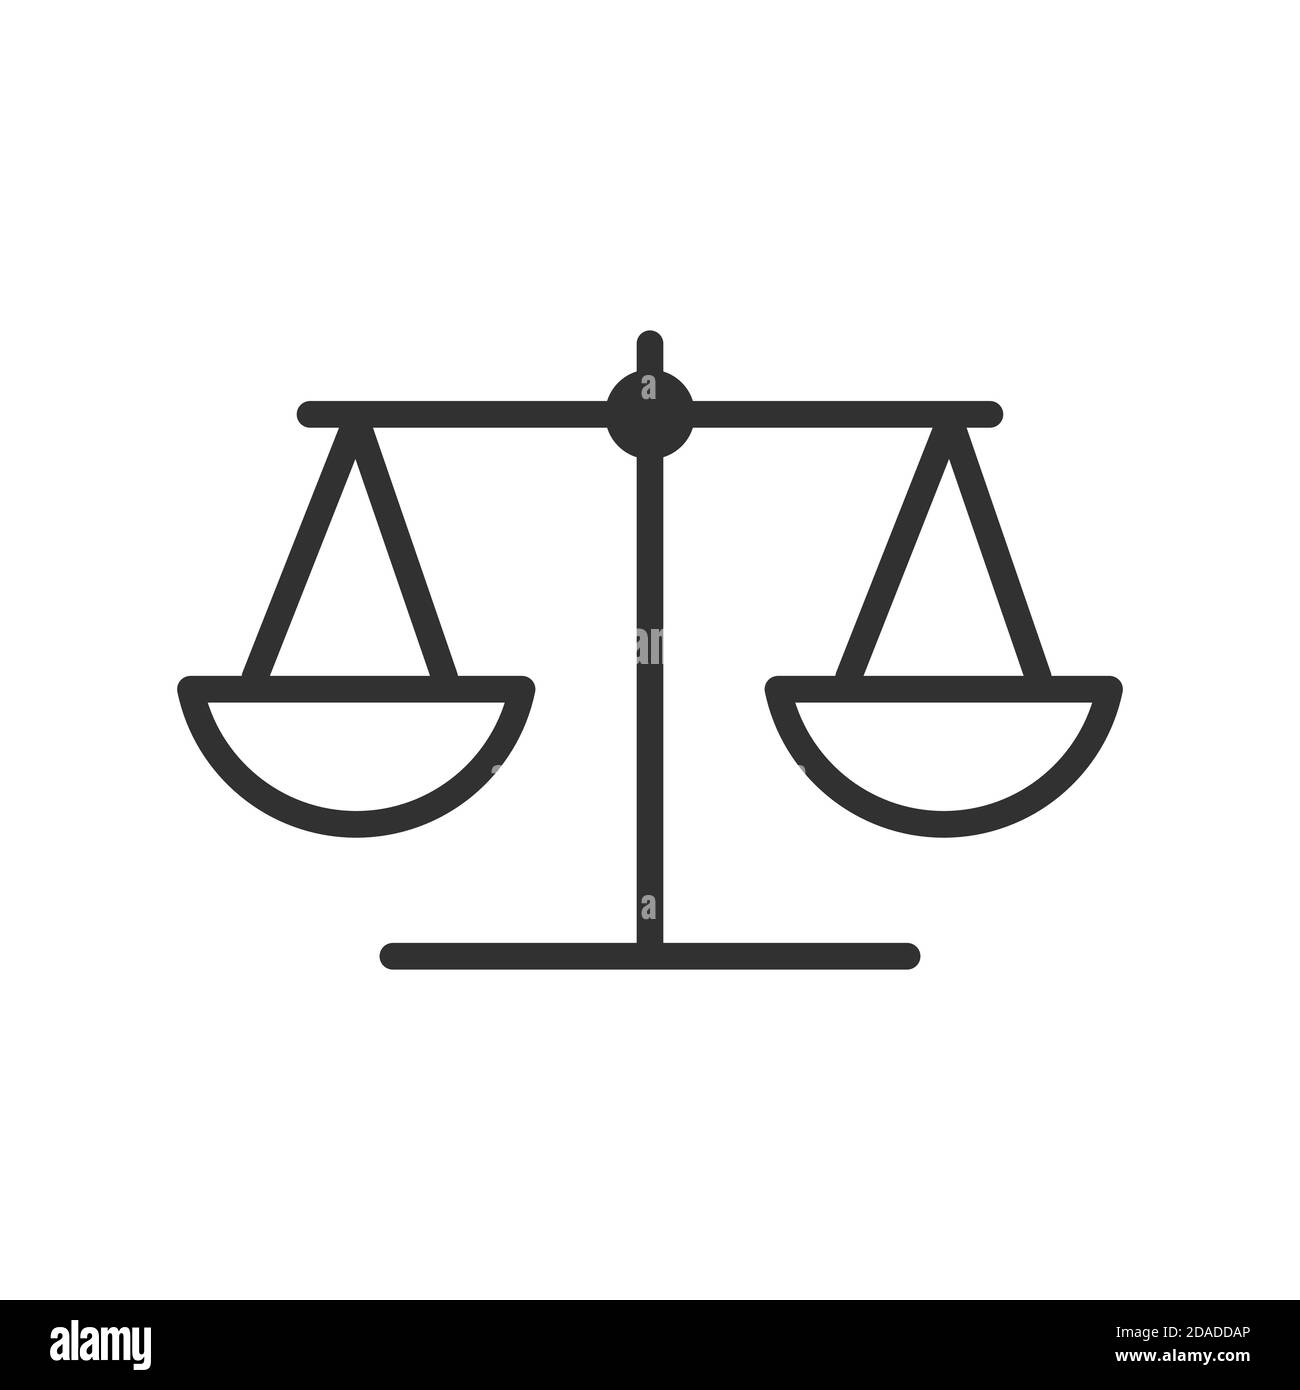 Vektor-Gesetz Maßstab der Gerechtigkeit Symbol Gewichtsausgleich Symbol,  Stock Vektor-Illustration isoliert auf weißem Hintergrund  Stock-Vektorgrafik - Alamy